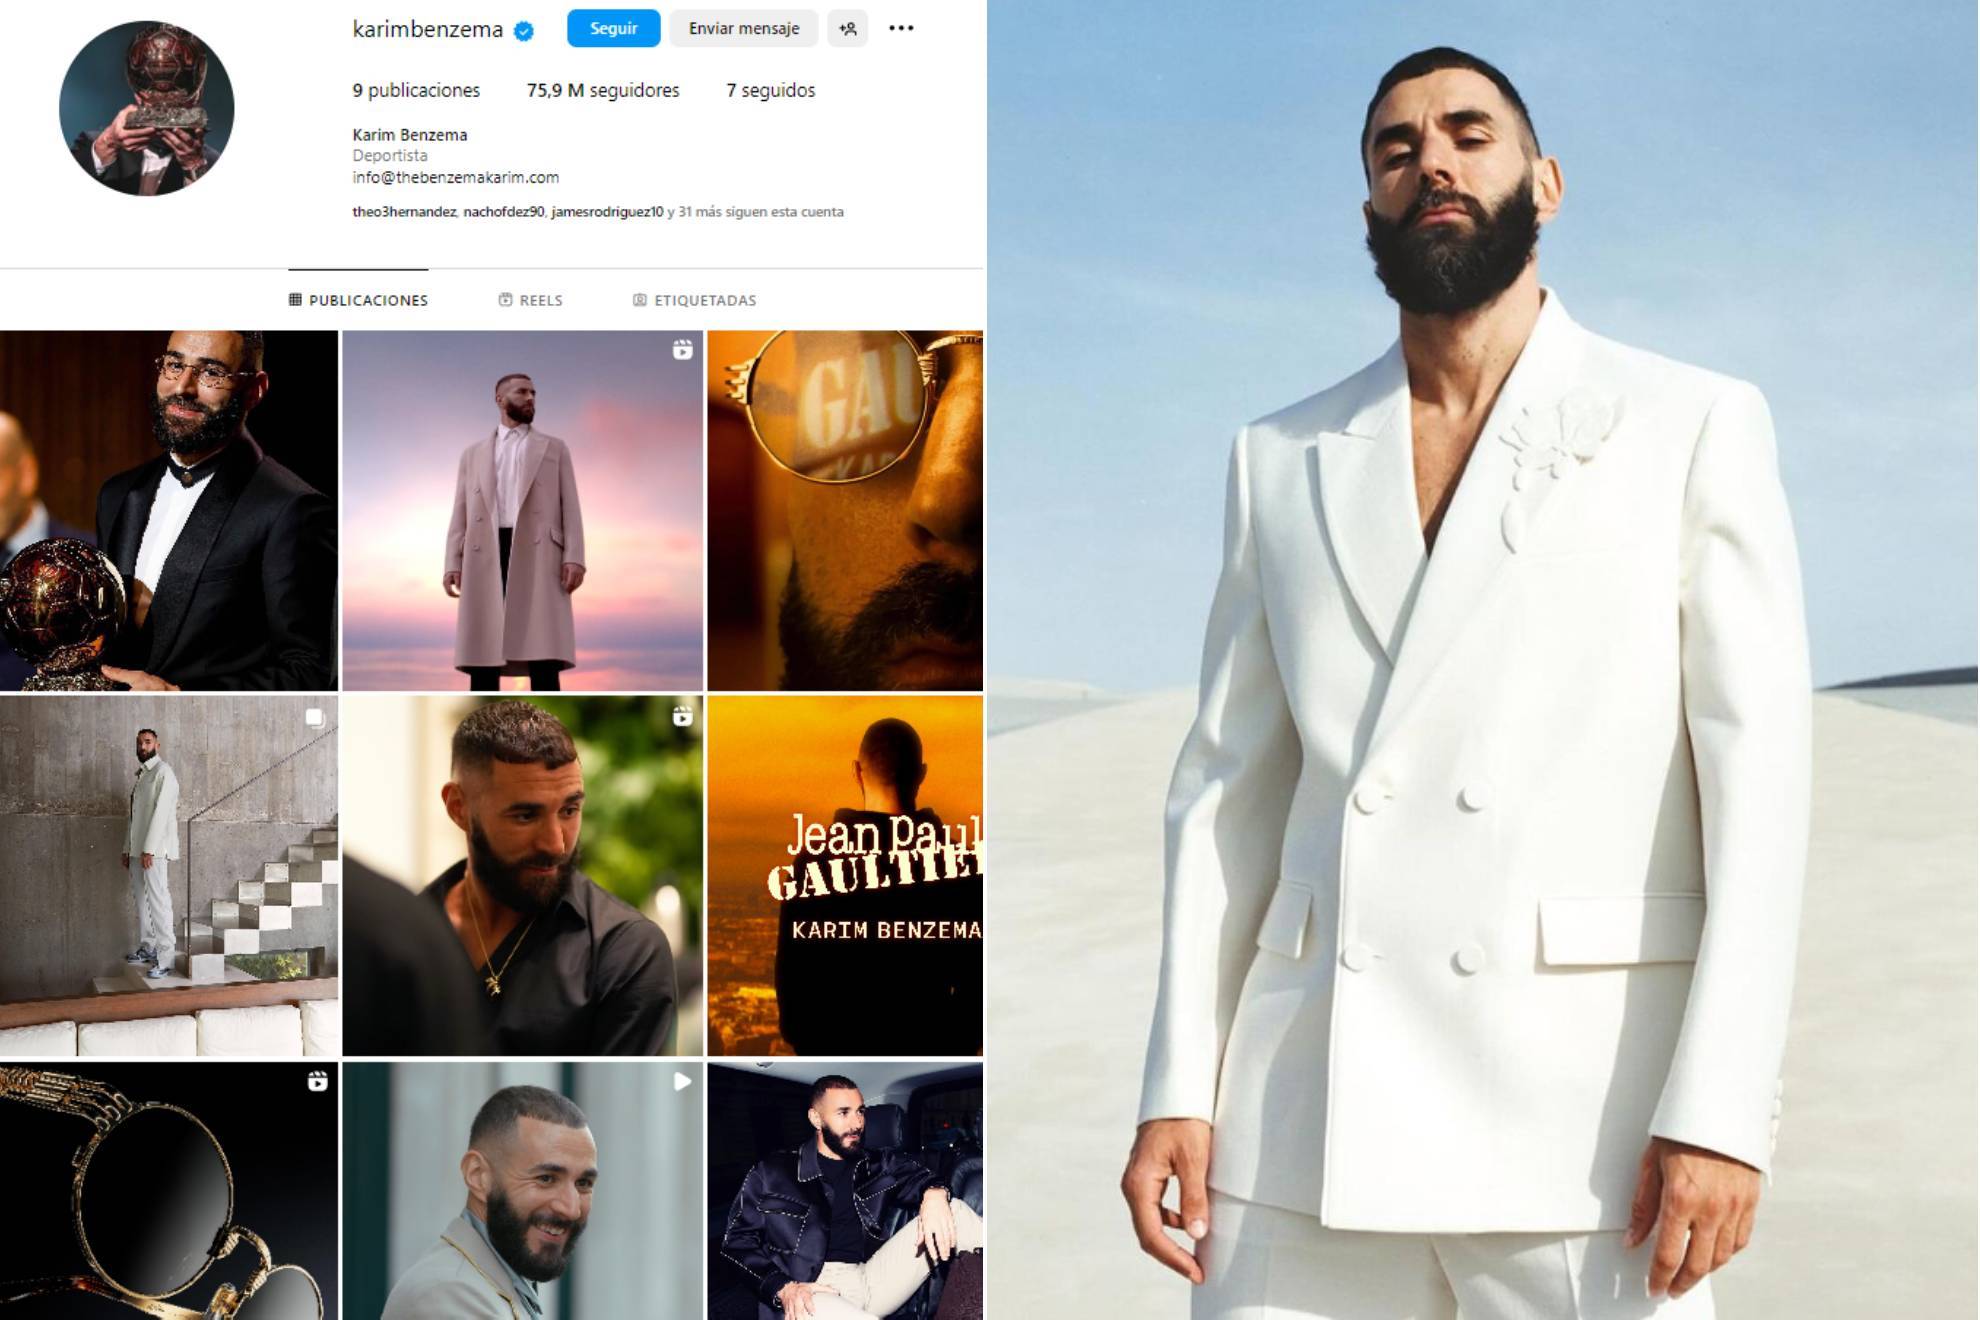 La limpia de Benzema con su cuenta de Instagram: Seré yo mismo el que elija cuándo acaba mi carrera o no...